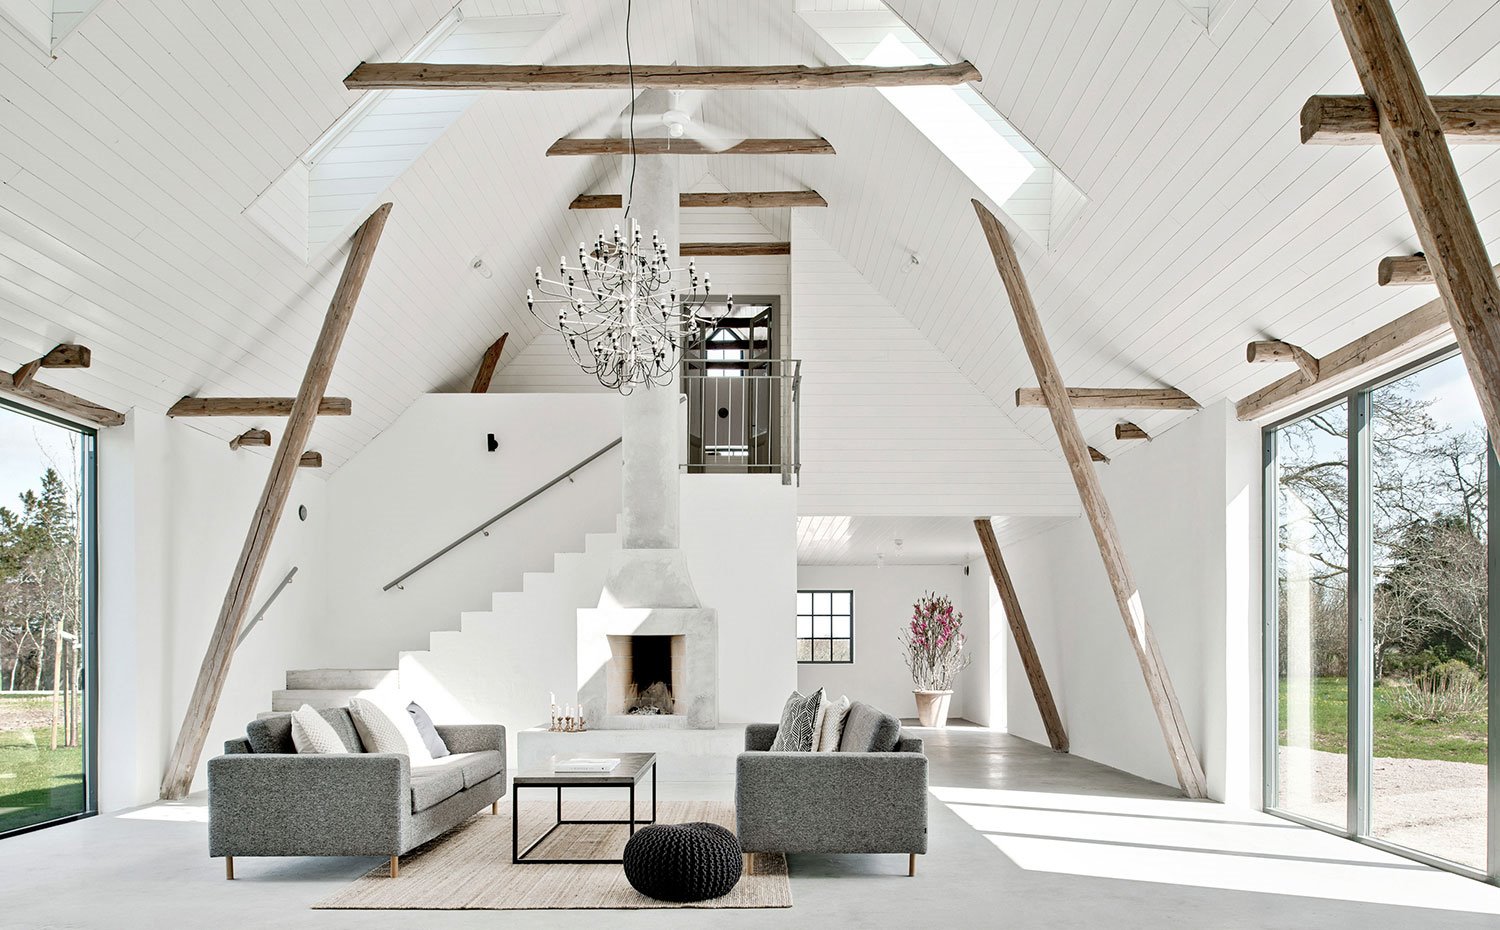 Vista salón con sofás en gris, techos de madera en blanco y vigas al natural